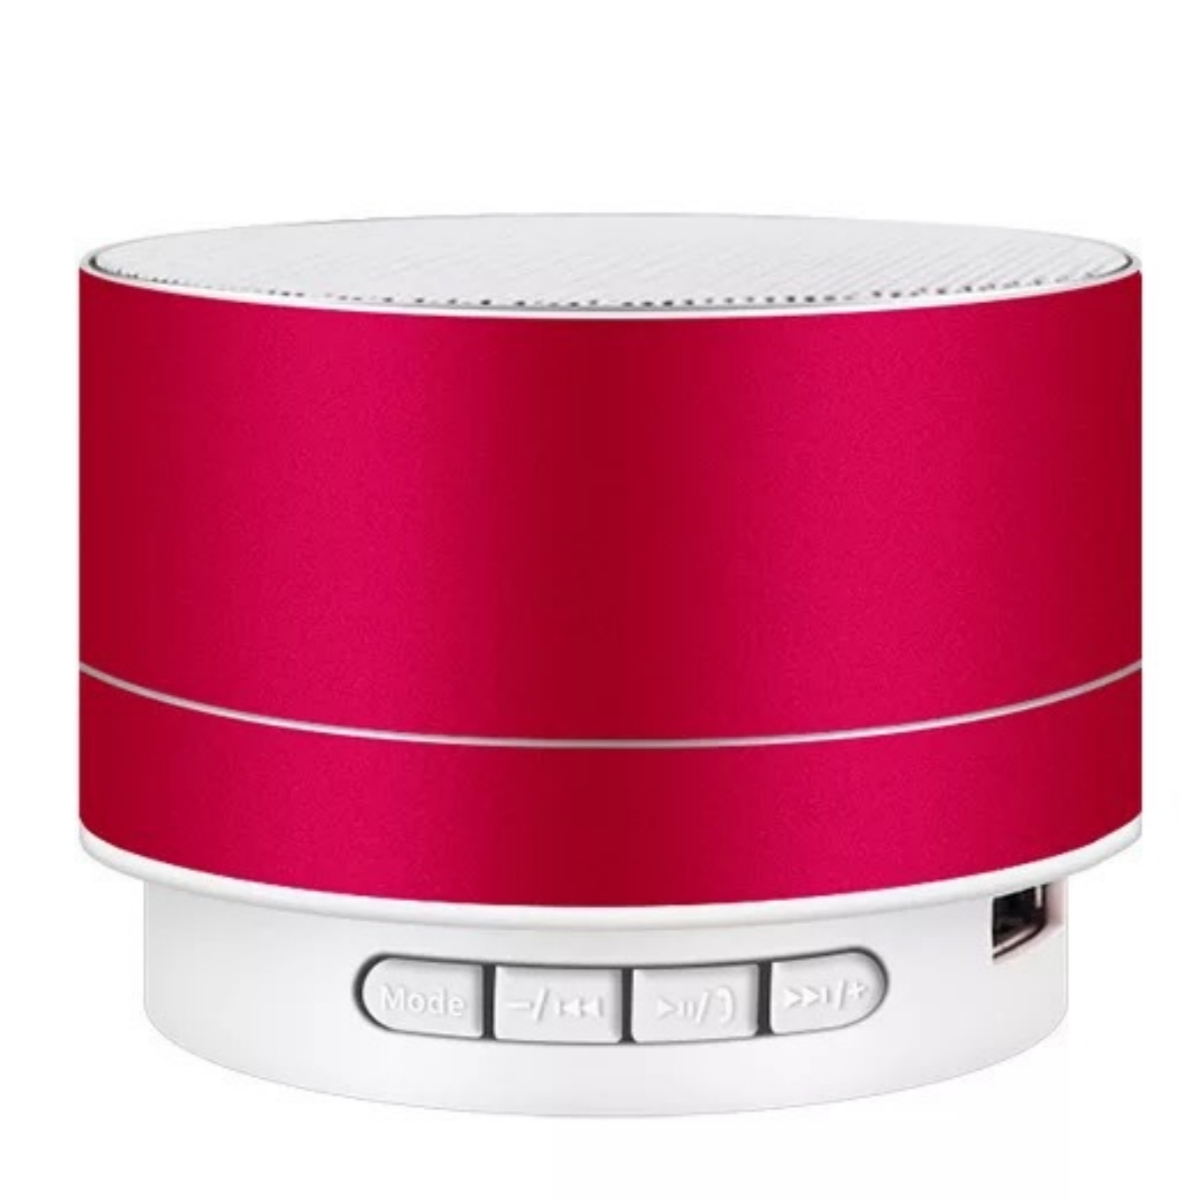 SHAOKE Bluetooth-Lautsprecher Bluetooth Lautsprecher, Surround-Sound - 360° Hochwertig Kompakt Rot Tragbar